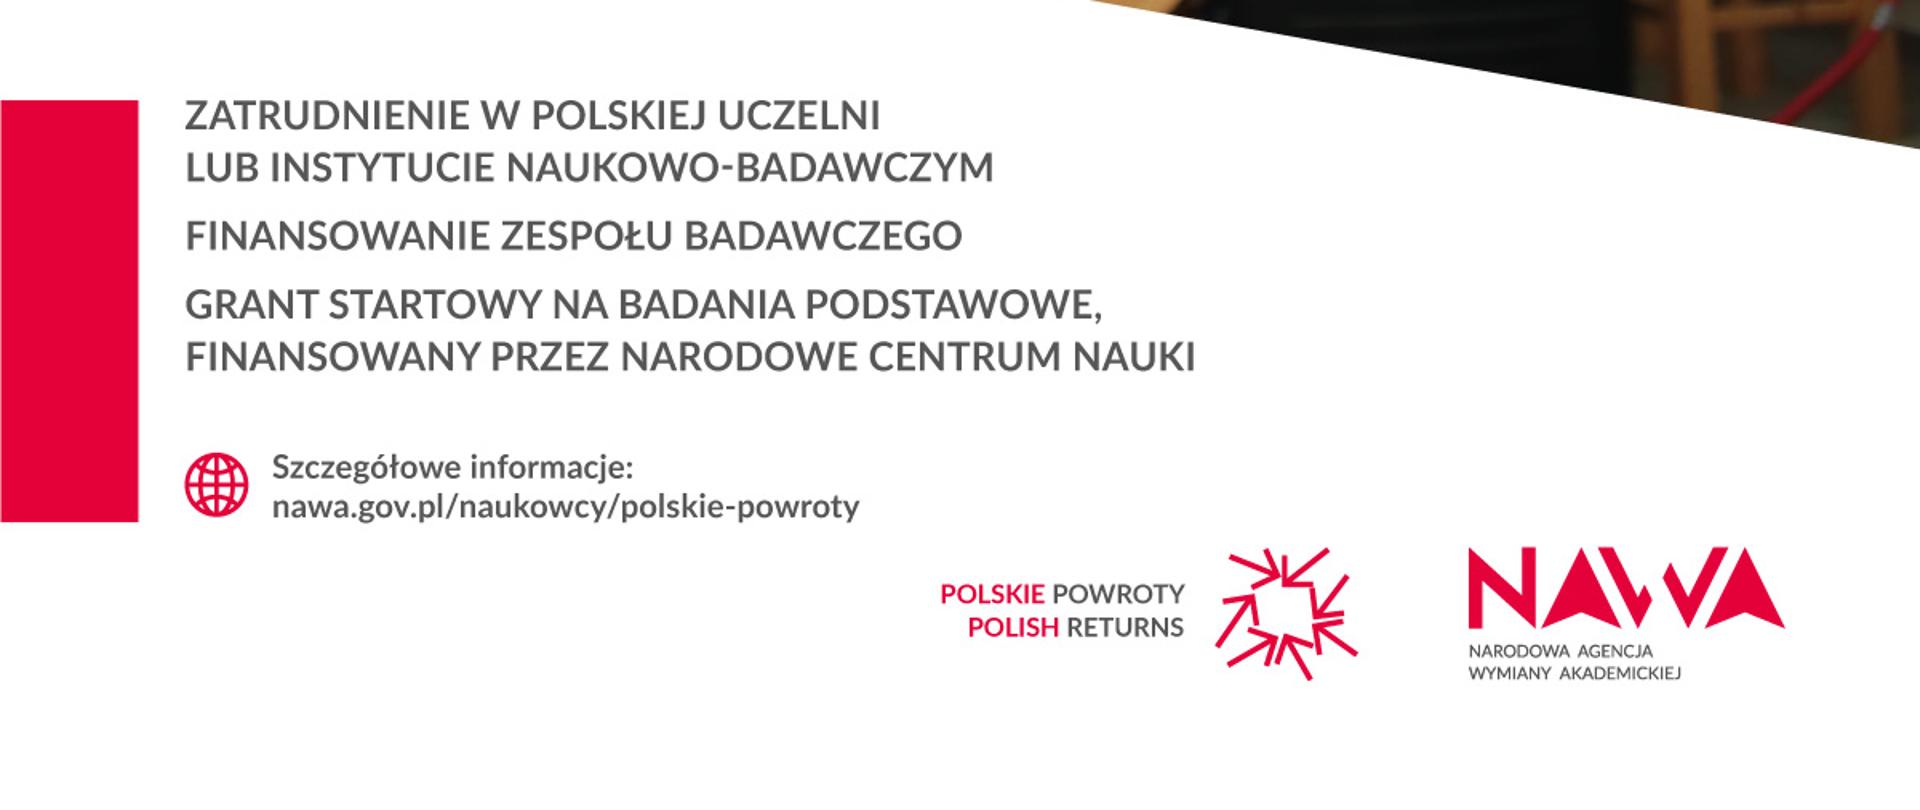 Program Polskie Powroty 